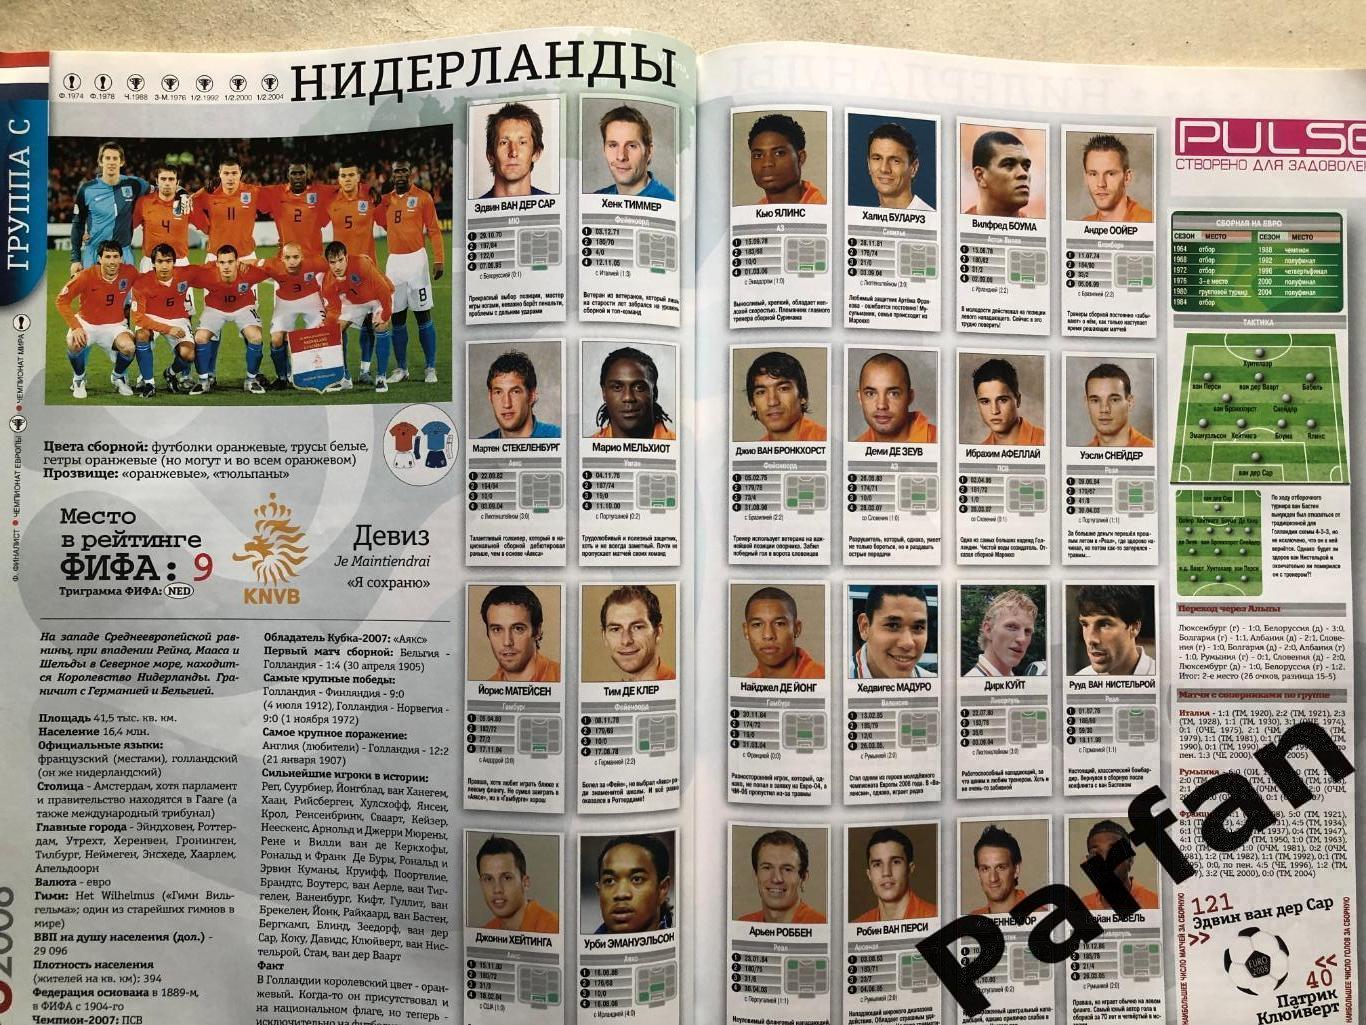 Журнал Футбол Україна Чемпіонат Європи 2008 Спецвипуск 4